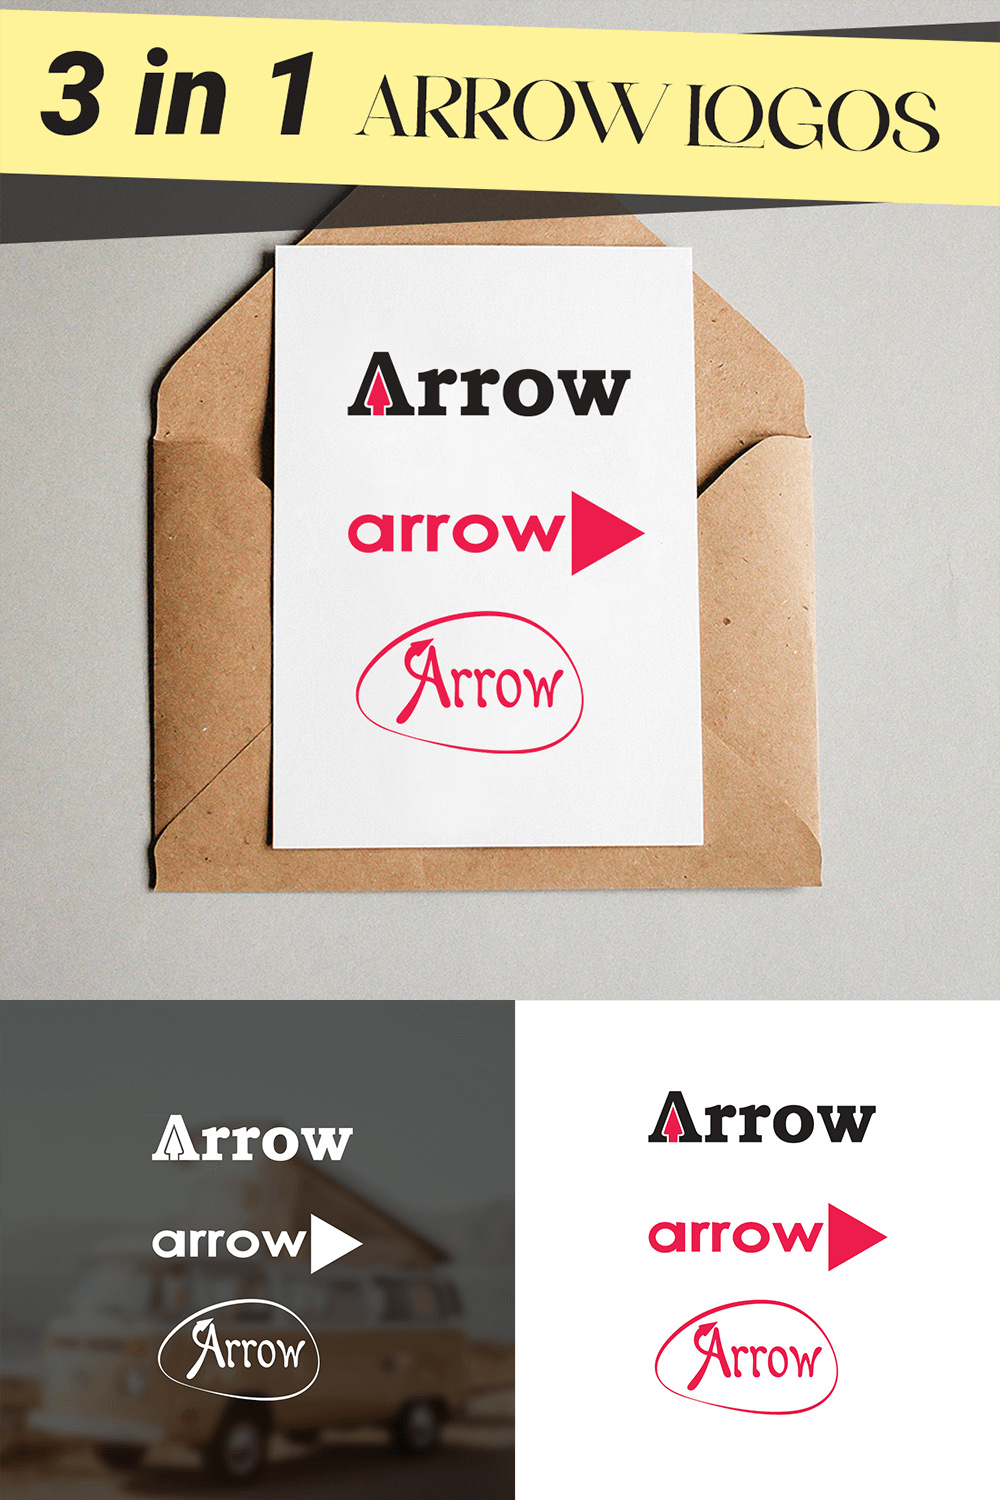 Arrow 3 Different Logo Design Bundle 3 In 1 Logo Sets Pinterest Image.